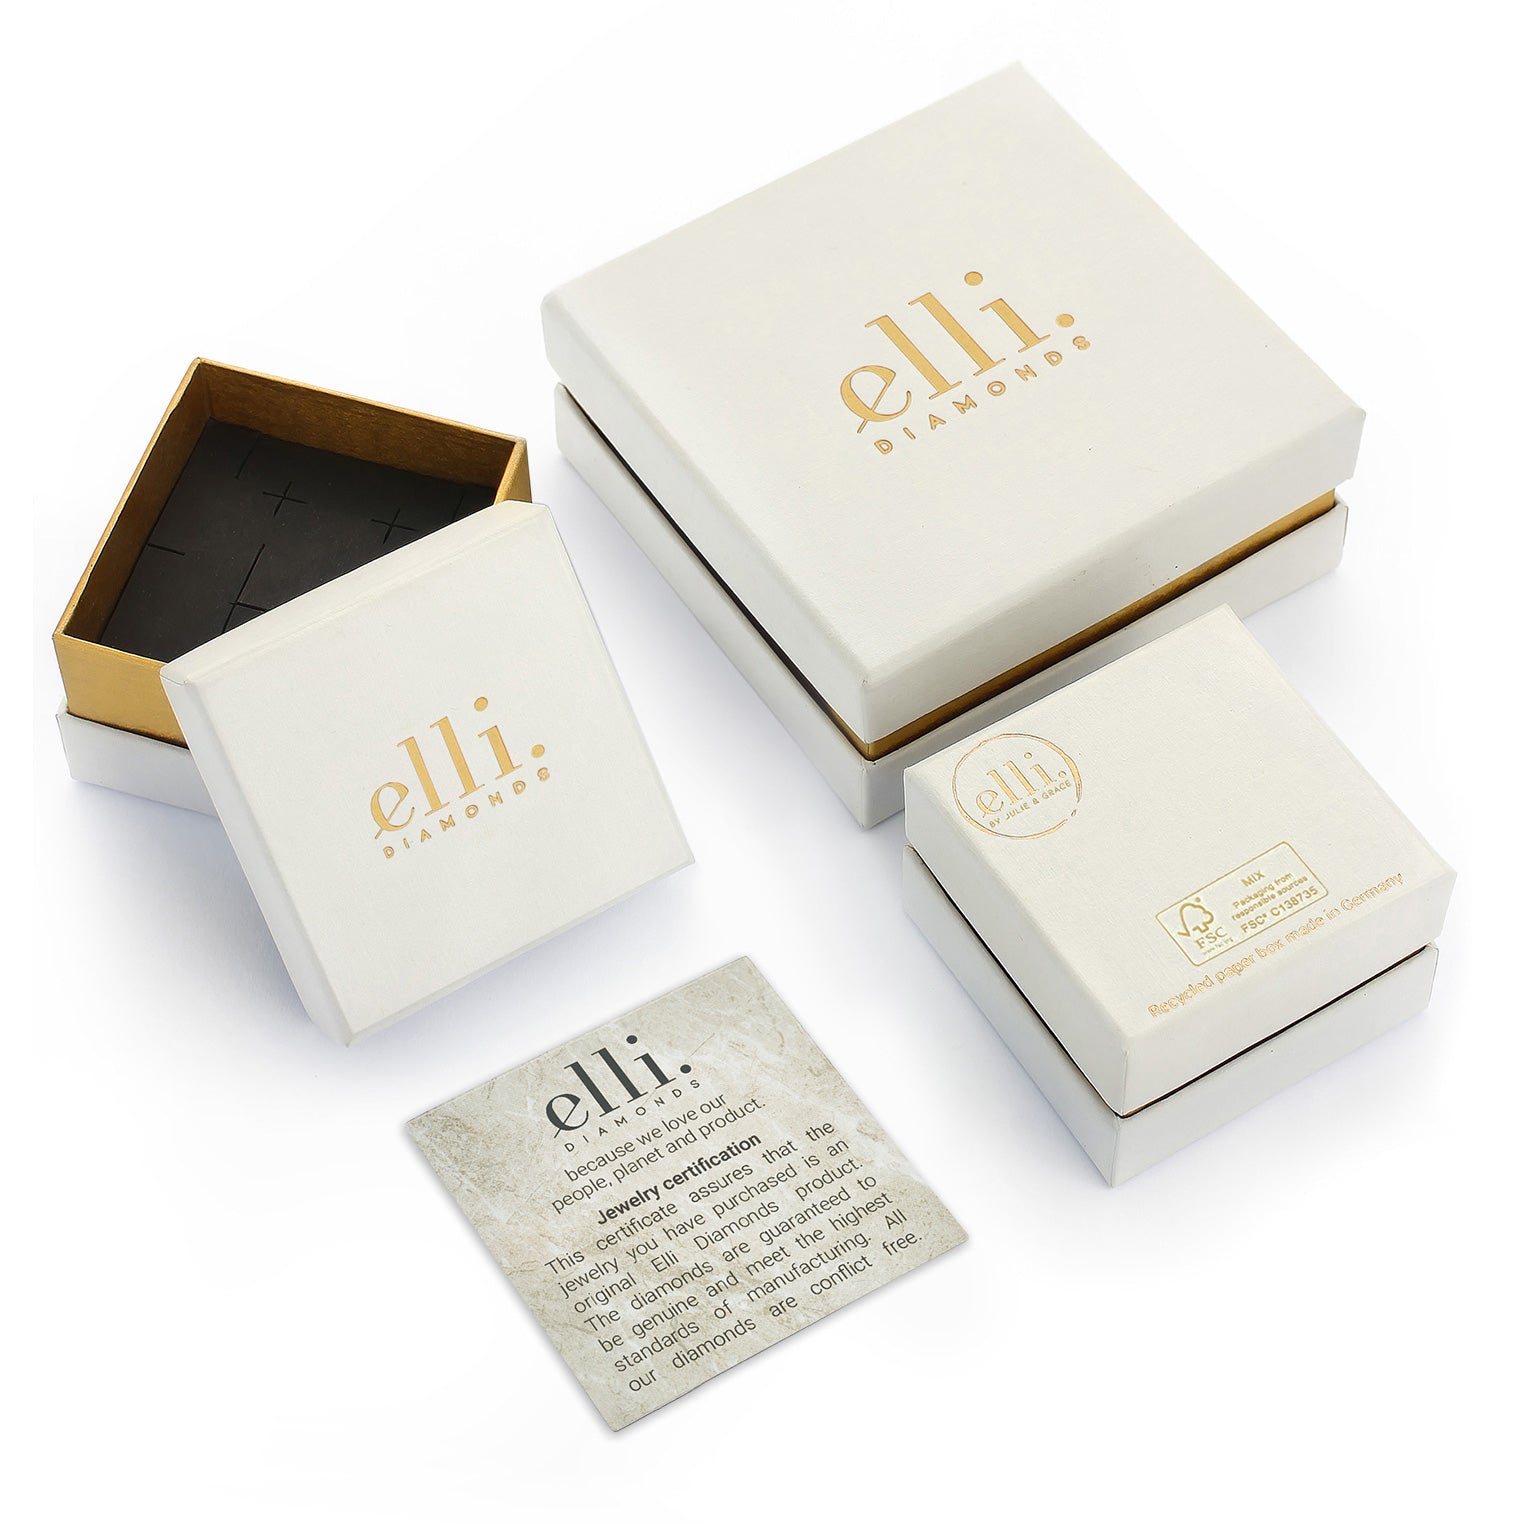 Gold - Elli DIAMONDS | Verlobungsring | Diamant ( Weiß, 0,23 ct ) | 585 Gelbgold